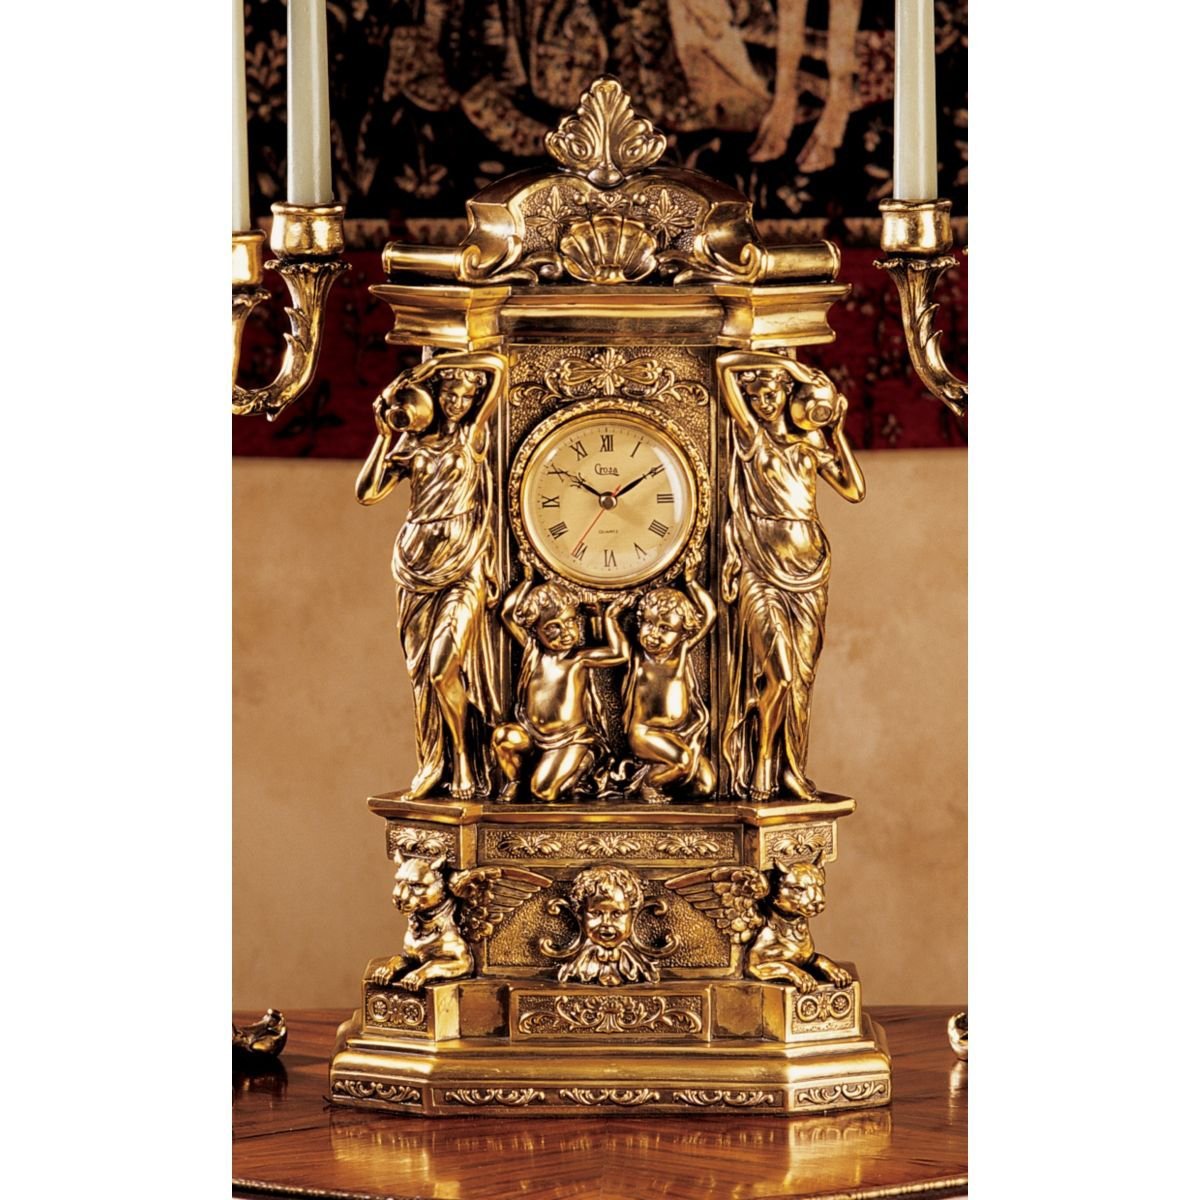 ギリシャ彫刻様式のマントルクロック 黄金の時計フェイクゴールド置時計インテリア置物彫刻装飾品家具オブジェ調度品雑貨泉ソース_画像1